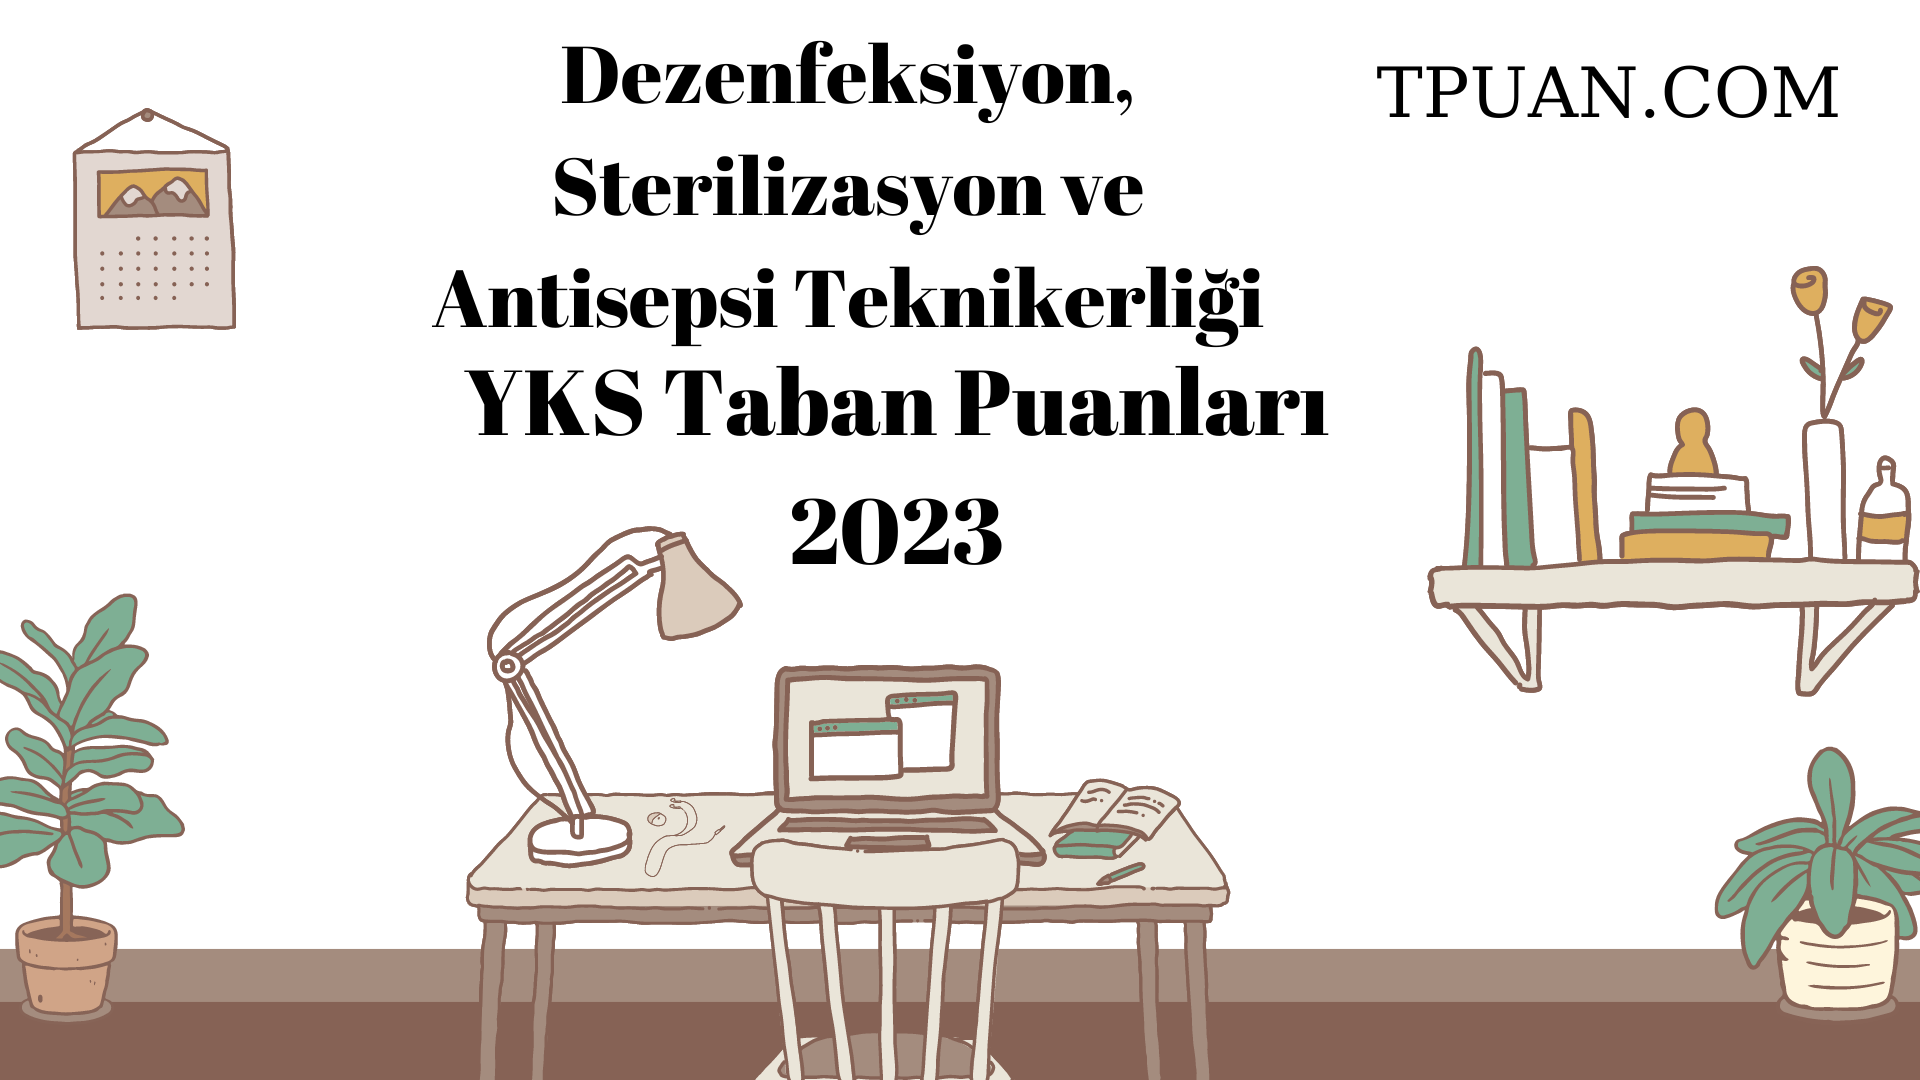  Dezenfeksiyon, Sterilizasyon ve Antisepsi Teknikerliği YKS Taban Puanları 2023